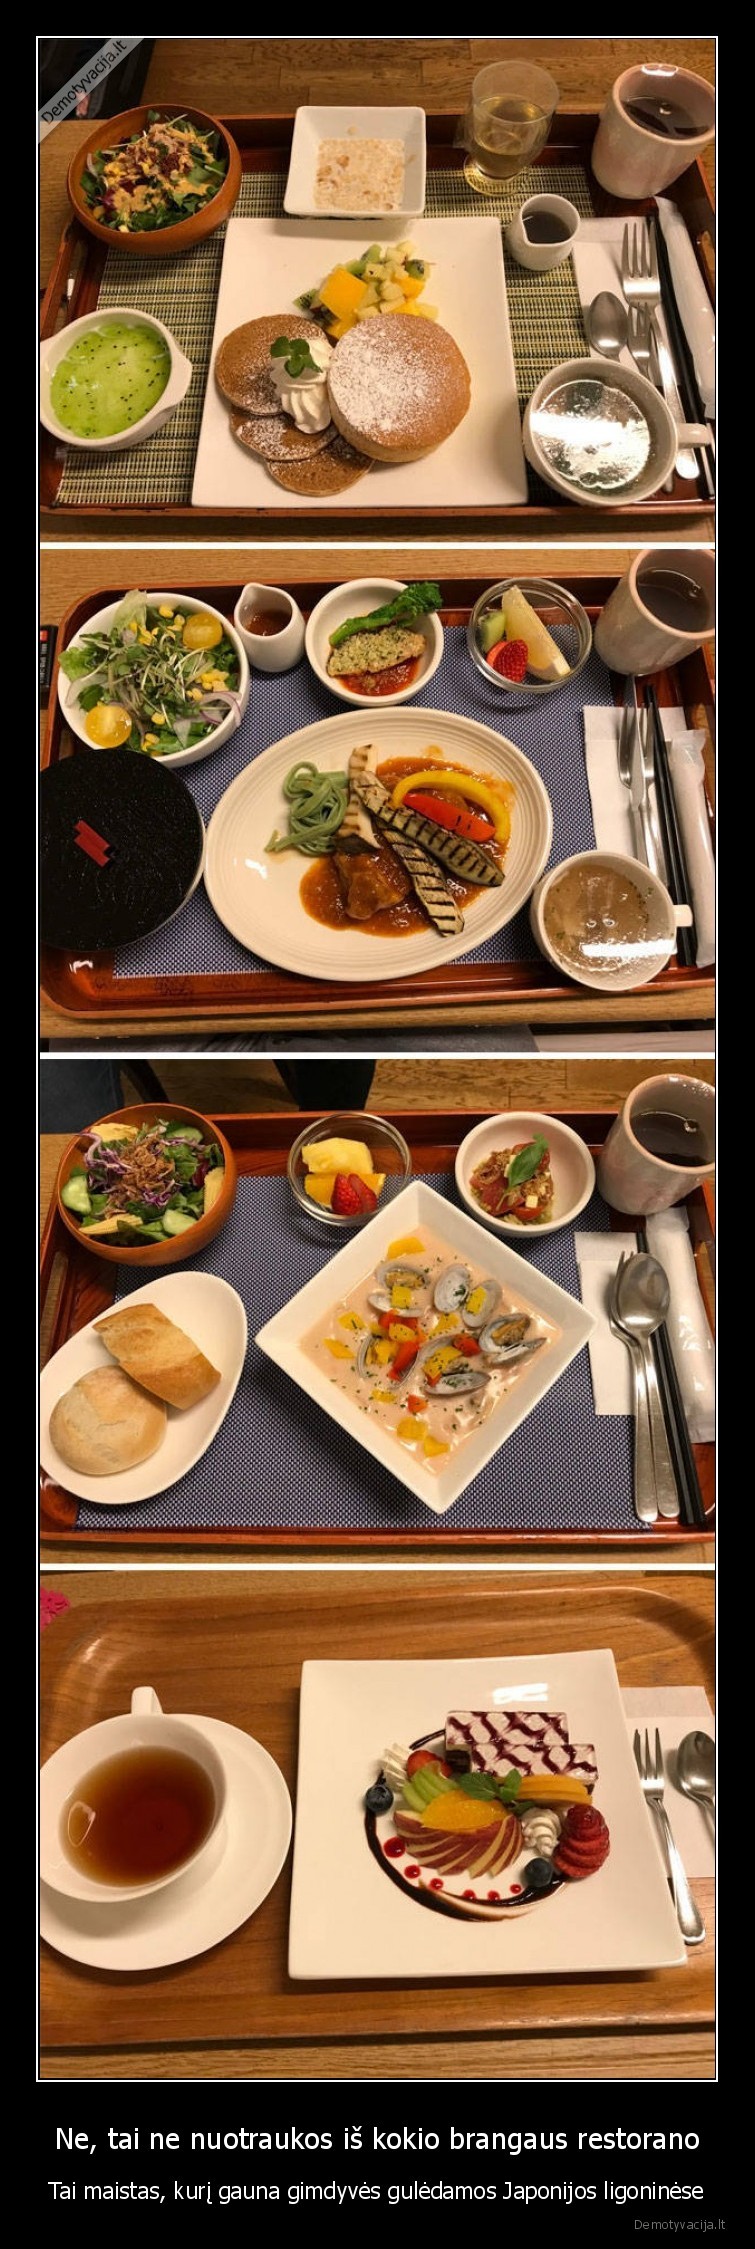 Ne tai ne nuotraukos is kokio brangaus restorano Tai maistas kuri gauna gimdyves guledamos Japonijos ligoninese